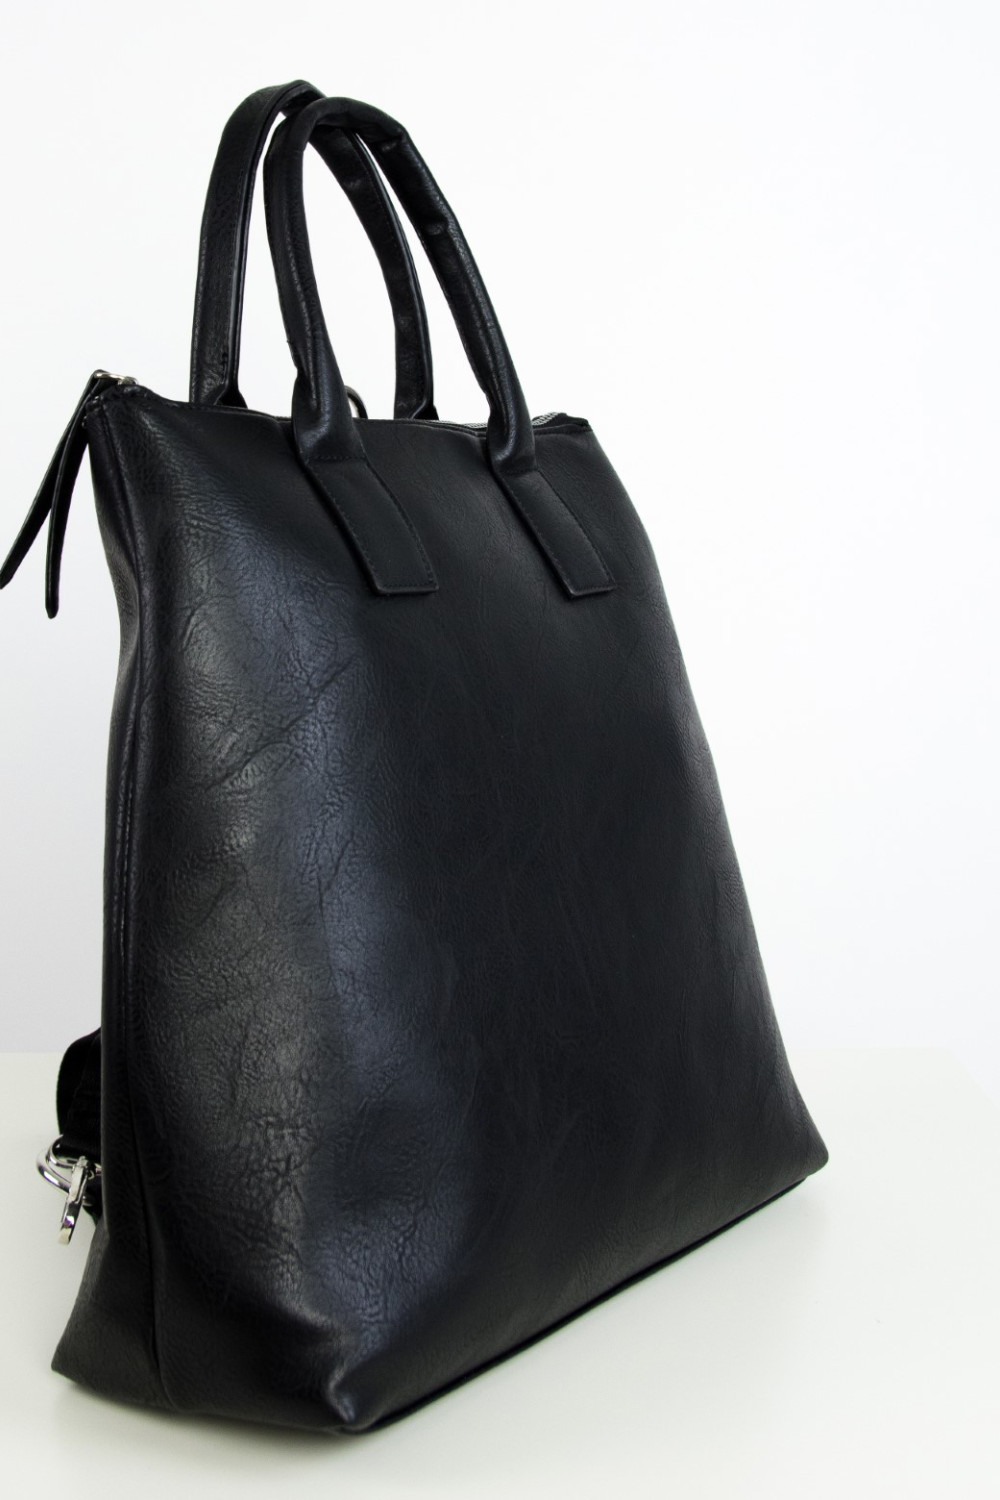 Γυναικεία μαύρη τσάντα ώμου-πλάτης δερματίνη CK52261W